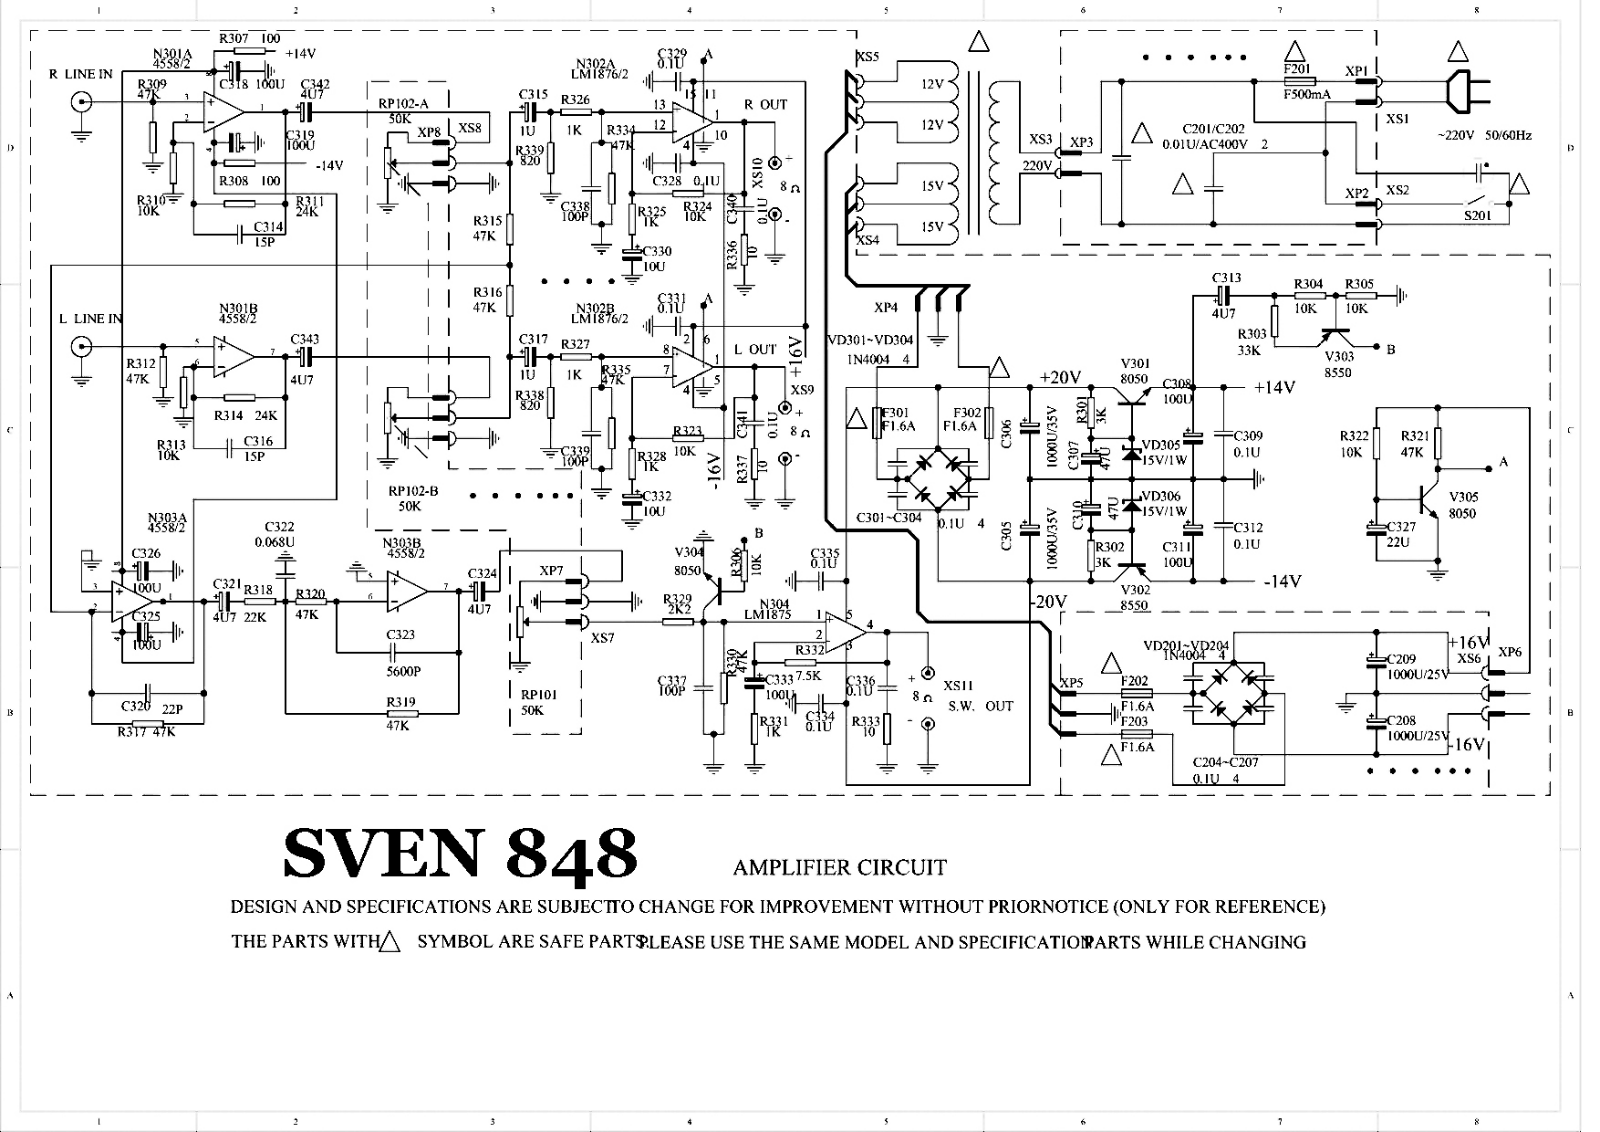 SVEN SPS-848 circuit diagram